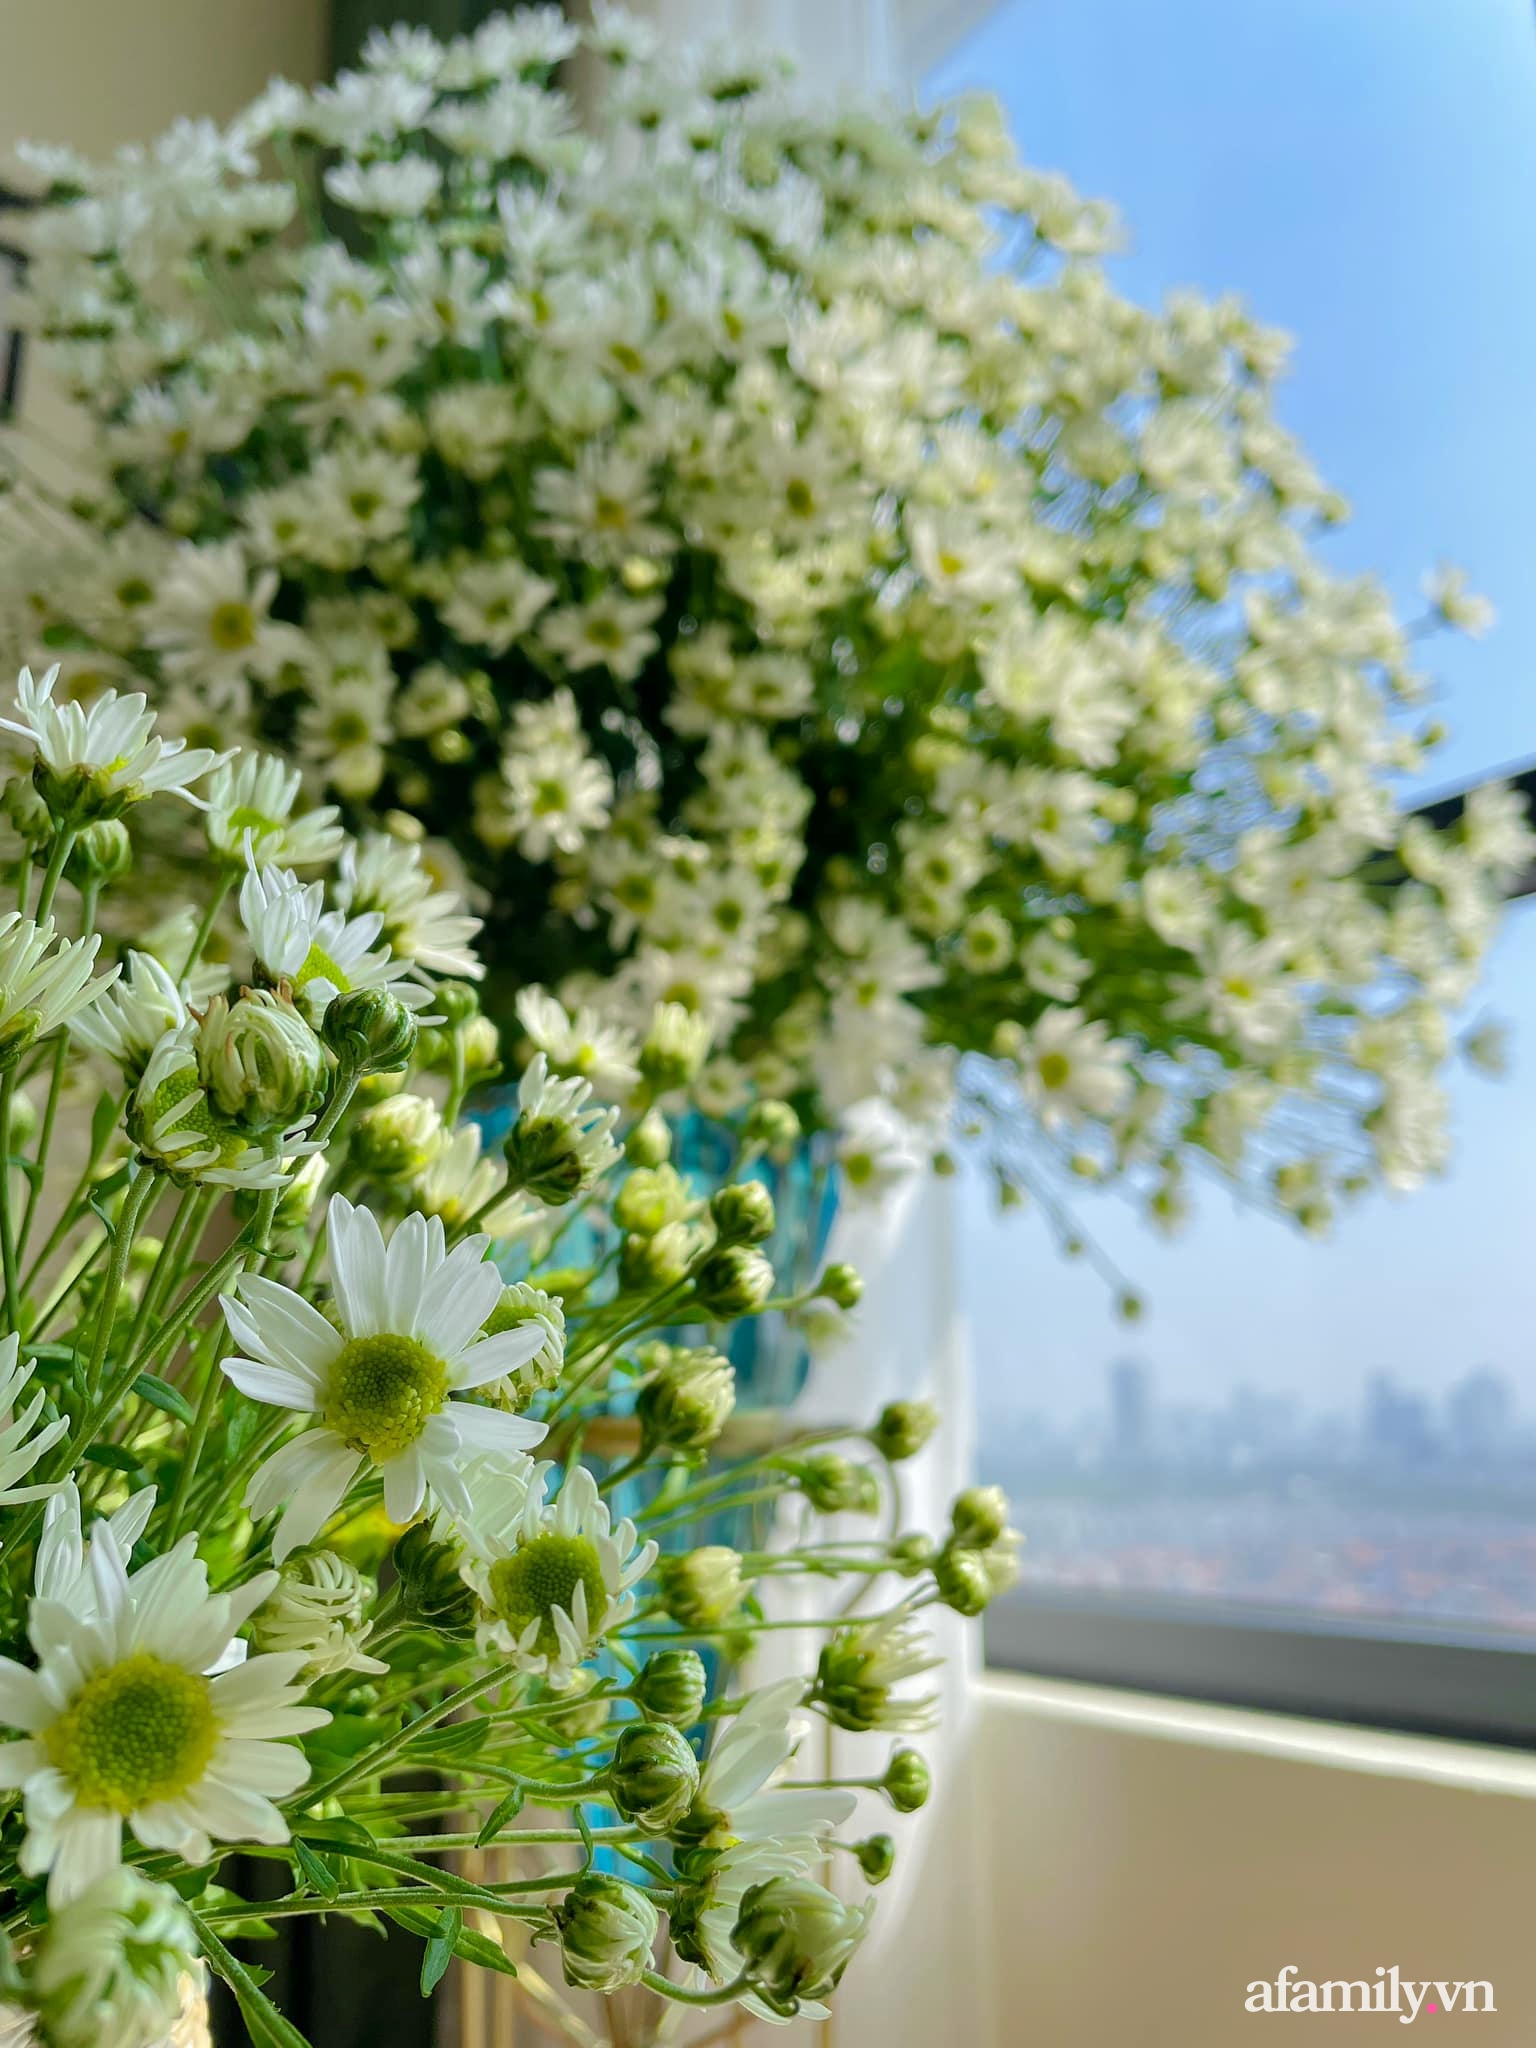 Cắm hoa: Nghệ thuật cắm hoa đem lại không khí tươi mới và thư thái cho không gian sống của bạn. Những bức ảnh về cách cắm hoa độc đáo và sáng tạo sẽ khiến bạn cảm thấy thích thú và muốn tìm hiểu về chủ đề này hơn.